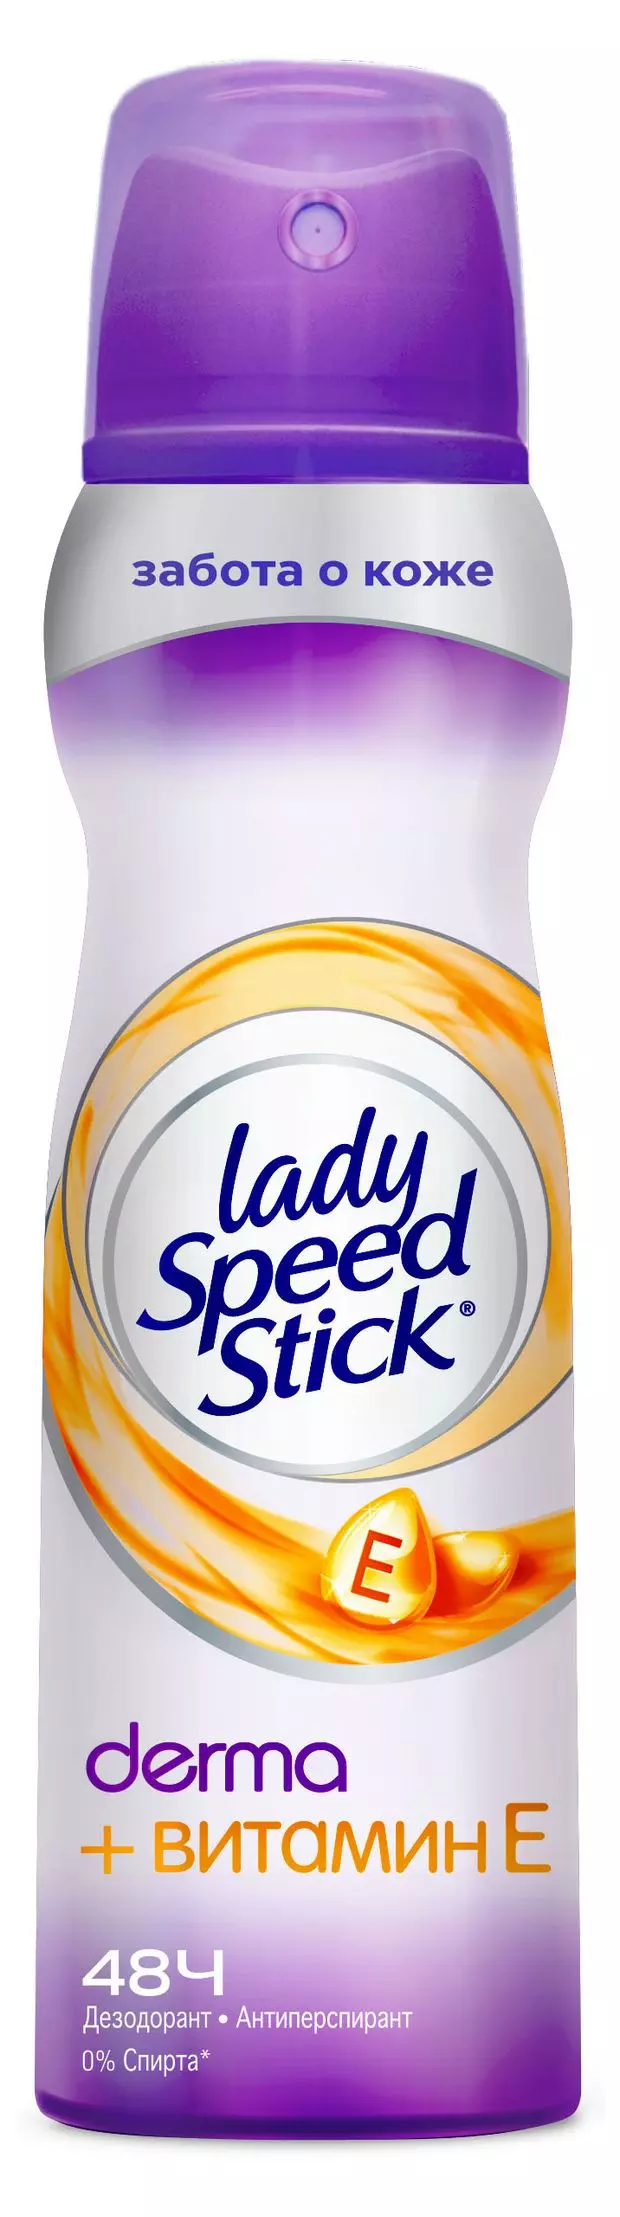 Дезодорант Lady speed stick Derma Витамин E 48ч 150мл